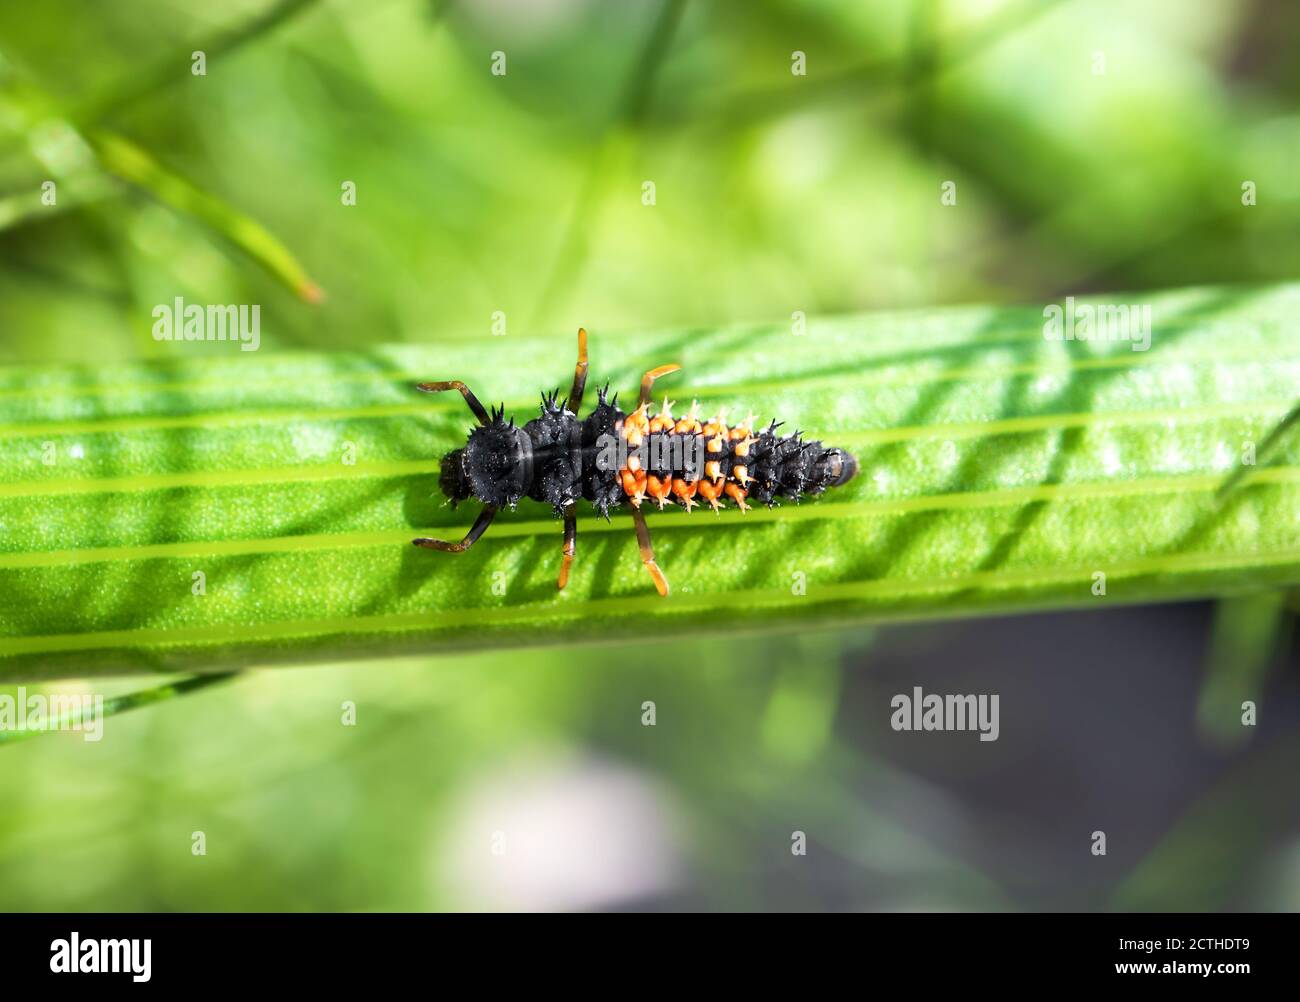 Die Marienkäfer-Larven oder die Nymphe auf dem Stamm der Fenchelpflanze. Dieser schwarz orange gruselig aussehende Käfer ist äußerst vorteilhaft für den Garten. Verbraucht Blattläuse. Stockfoto